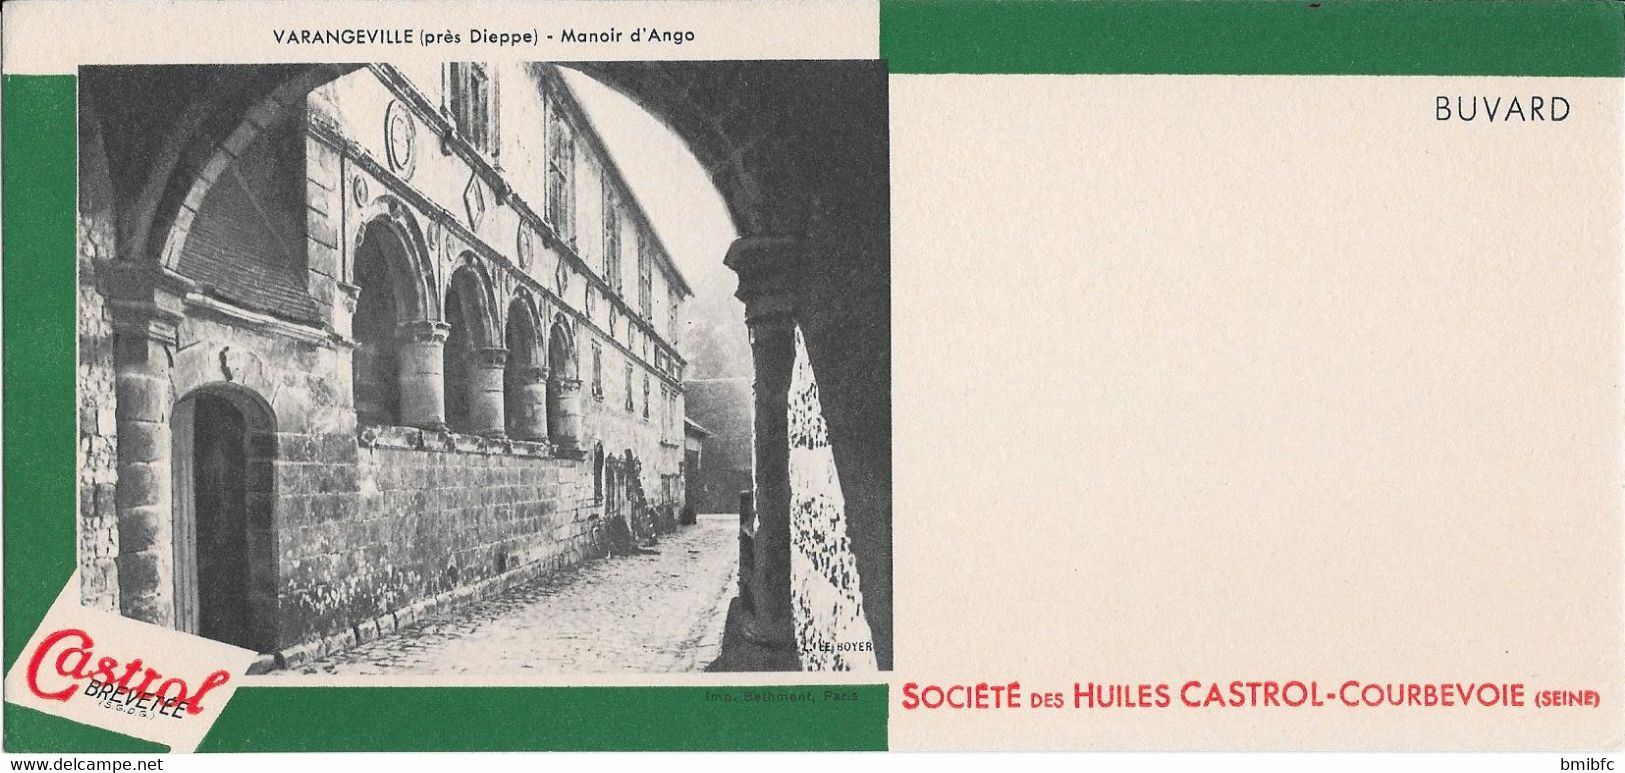 *** Buvard Société Des Huiles CASTROL-COURBEVOIE (Seine) Cliché VARANGEVILLE Près Dieppe - Manoir D'Ango - Hydrocarbures